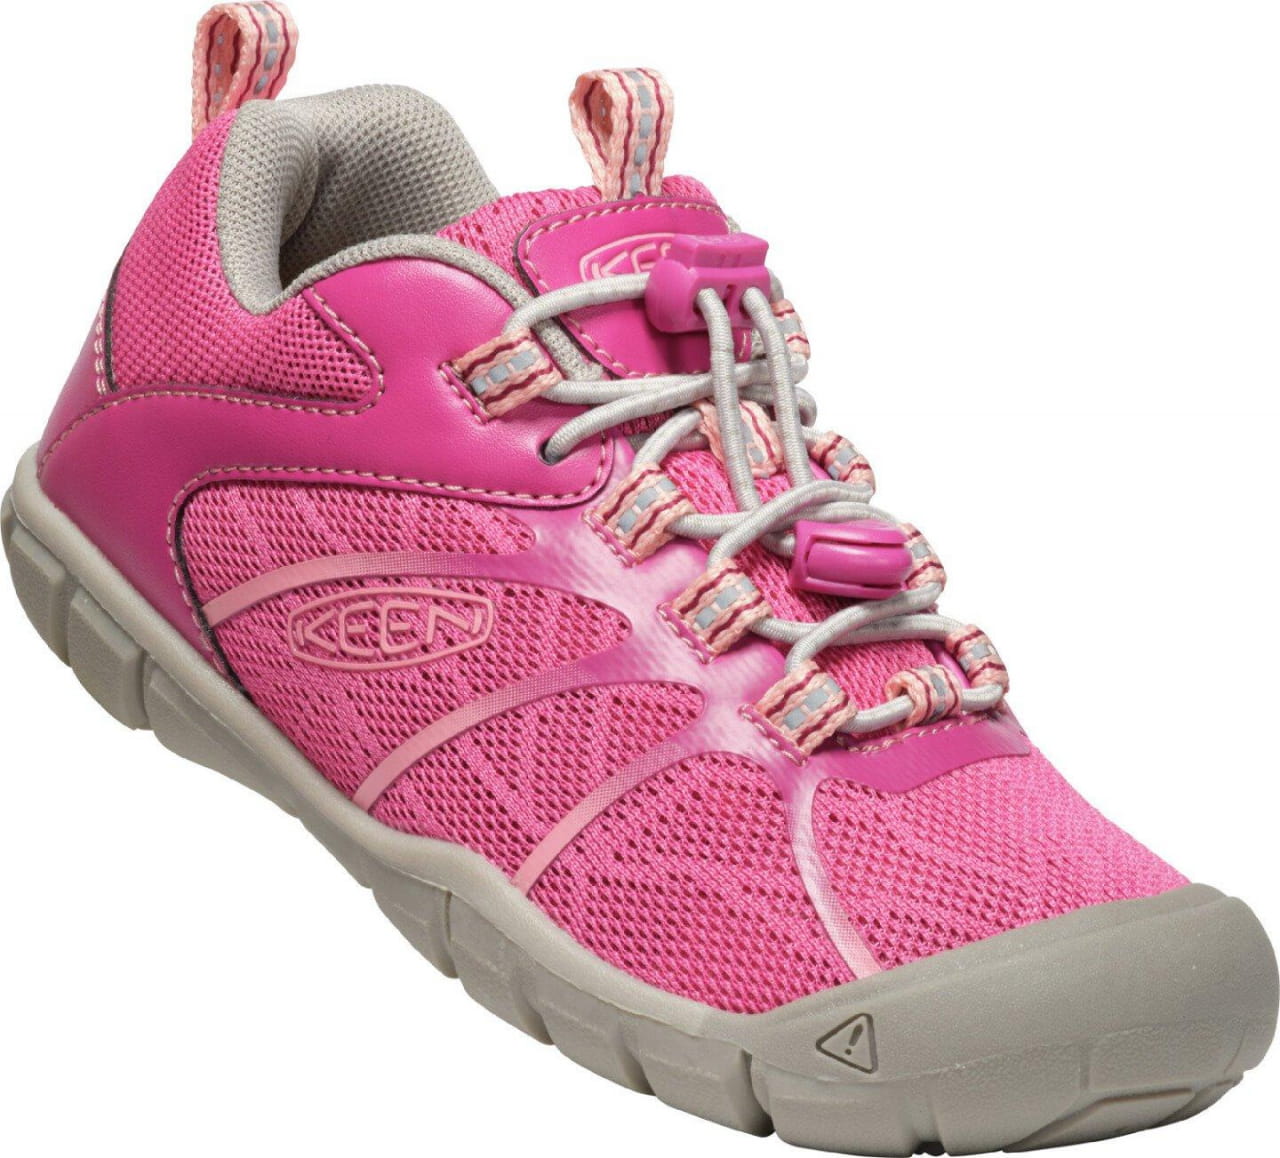 Outdoor-Schuhe für Kinder Keen Chandler 2 CNX C